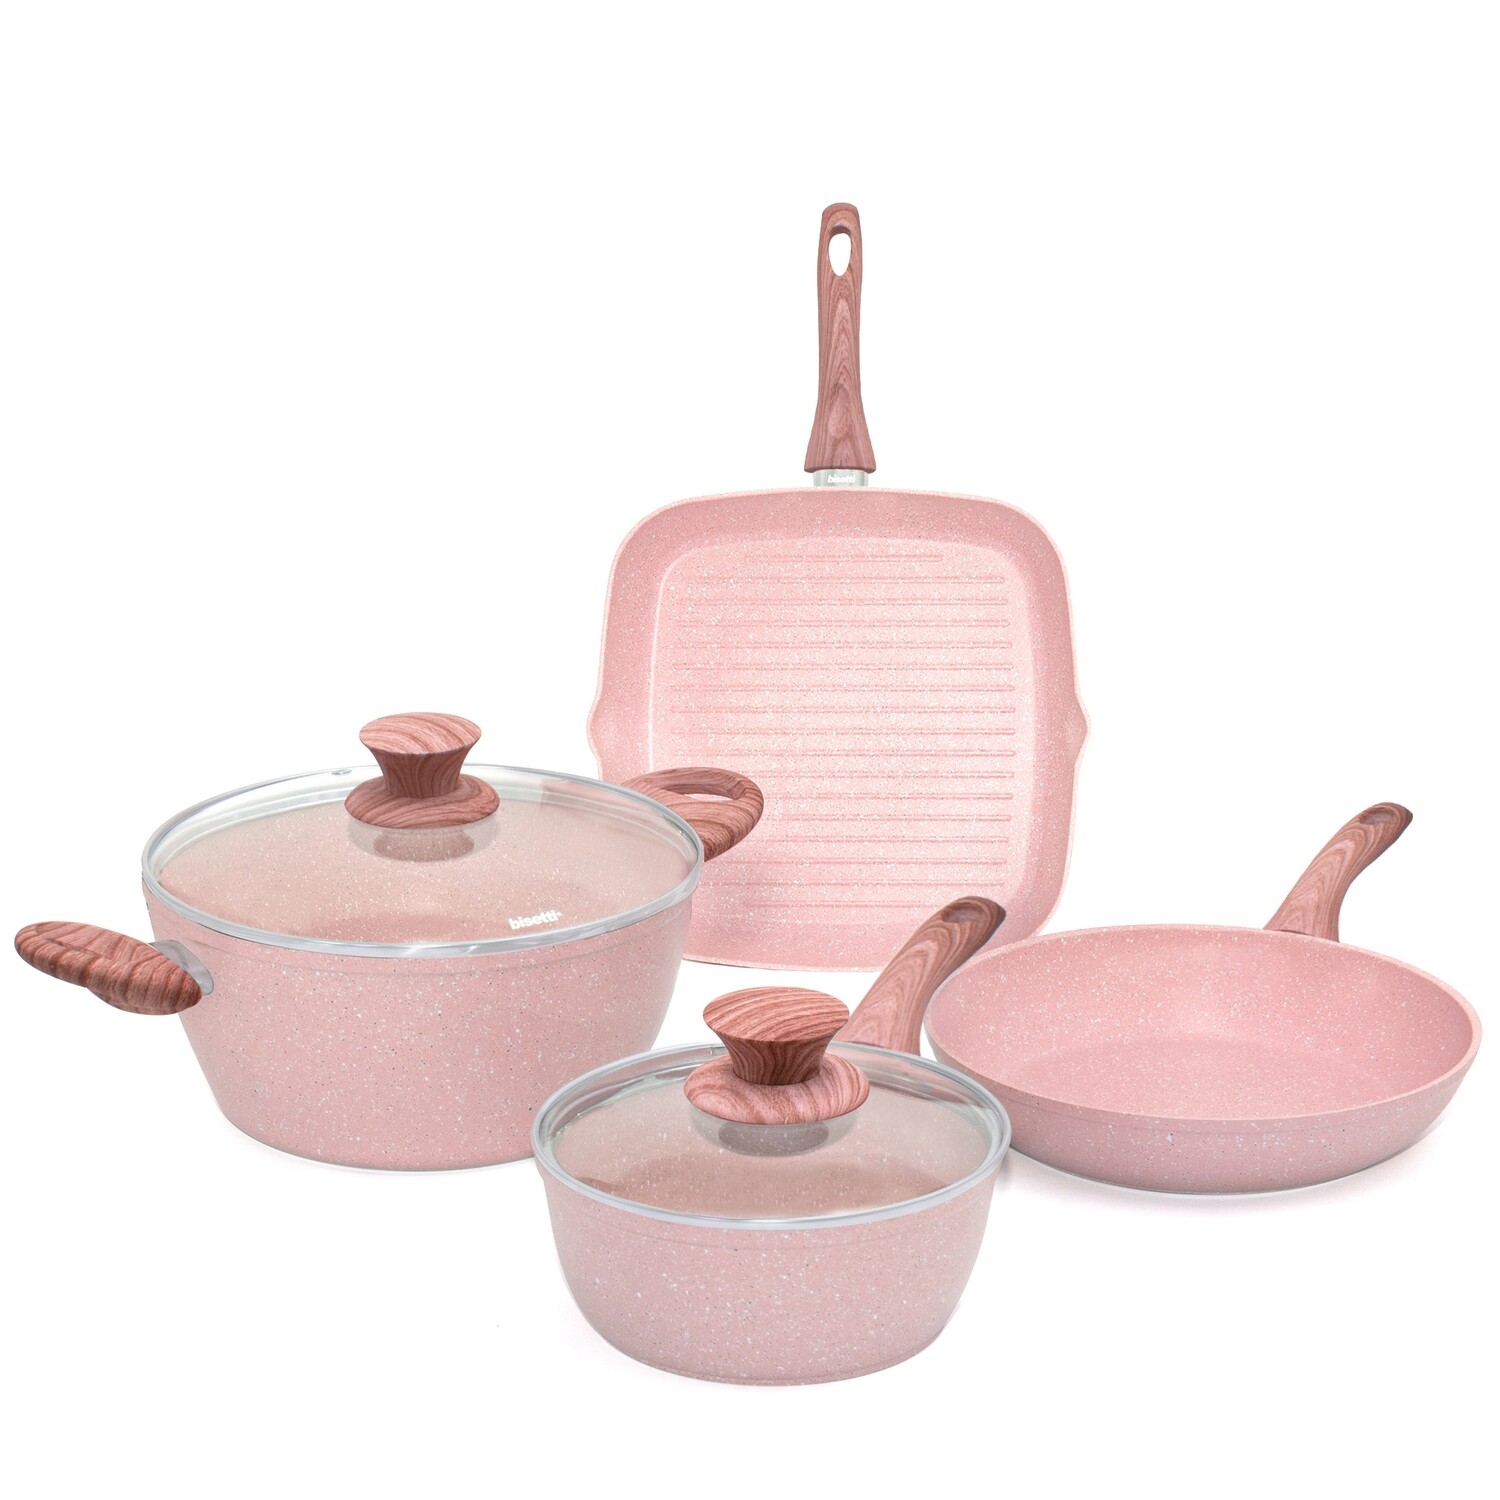 6 pieces cookware set 'Stonerose' pink wood colour handles